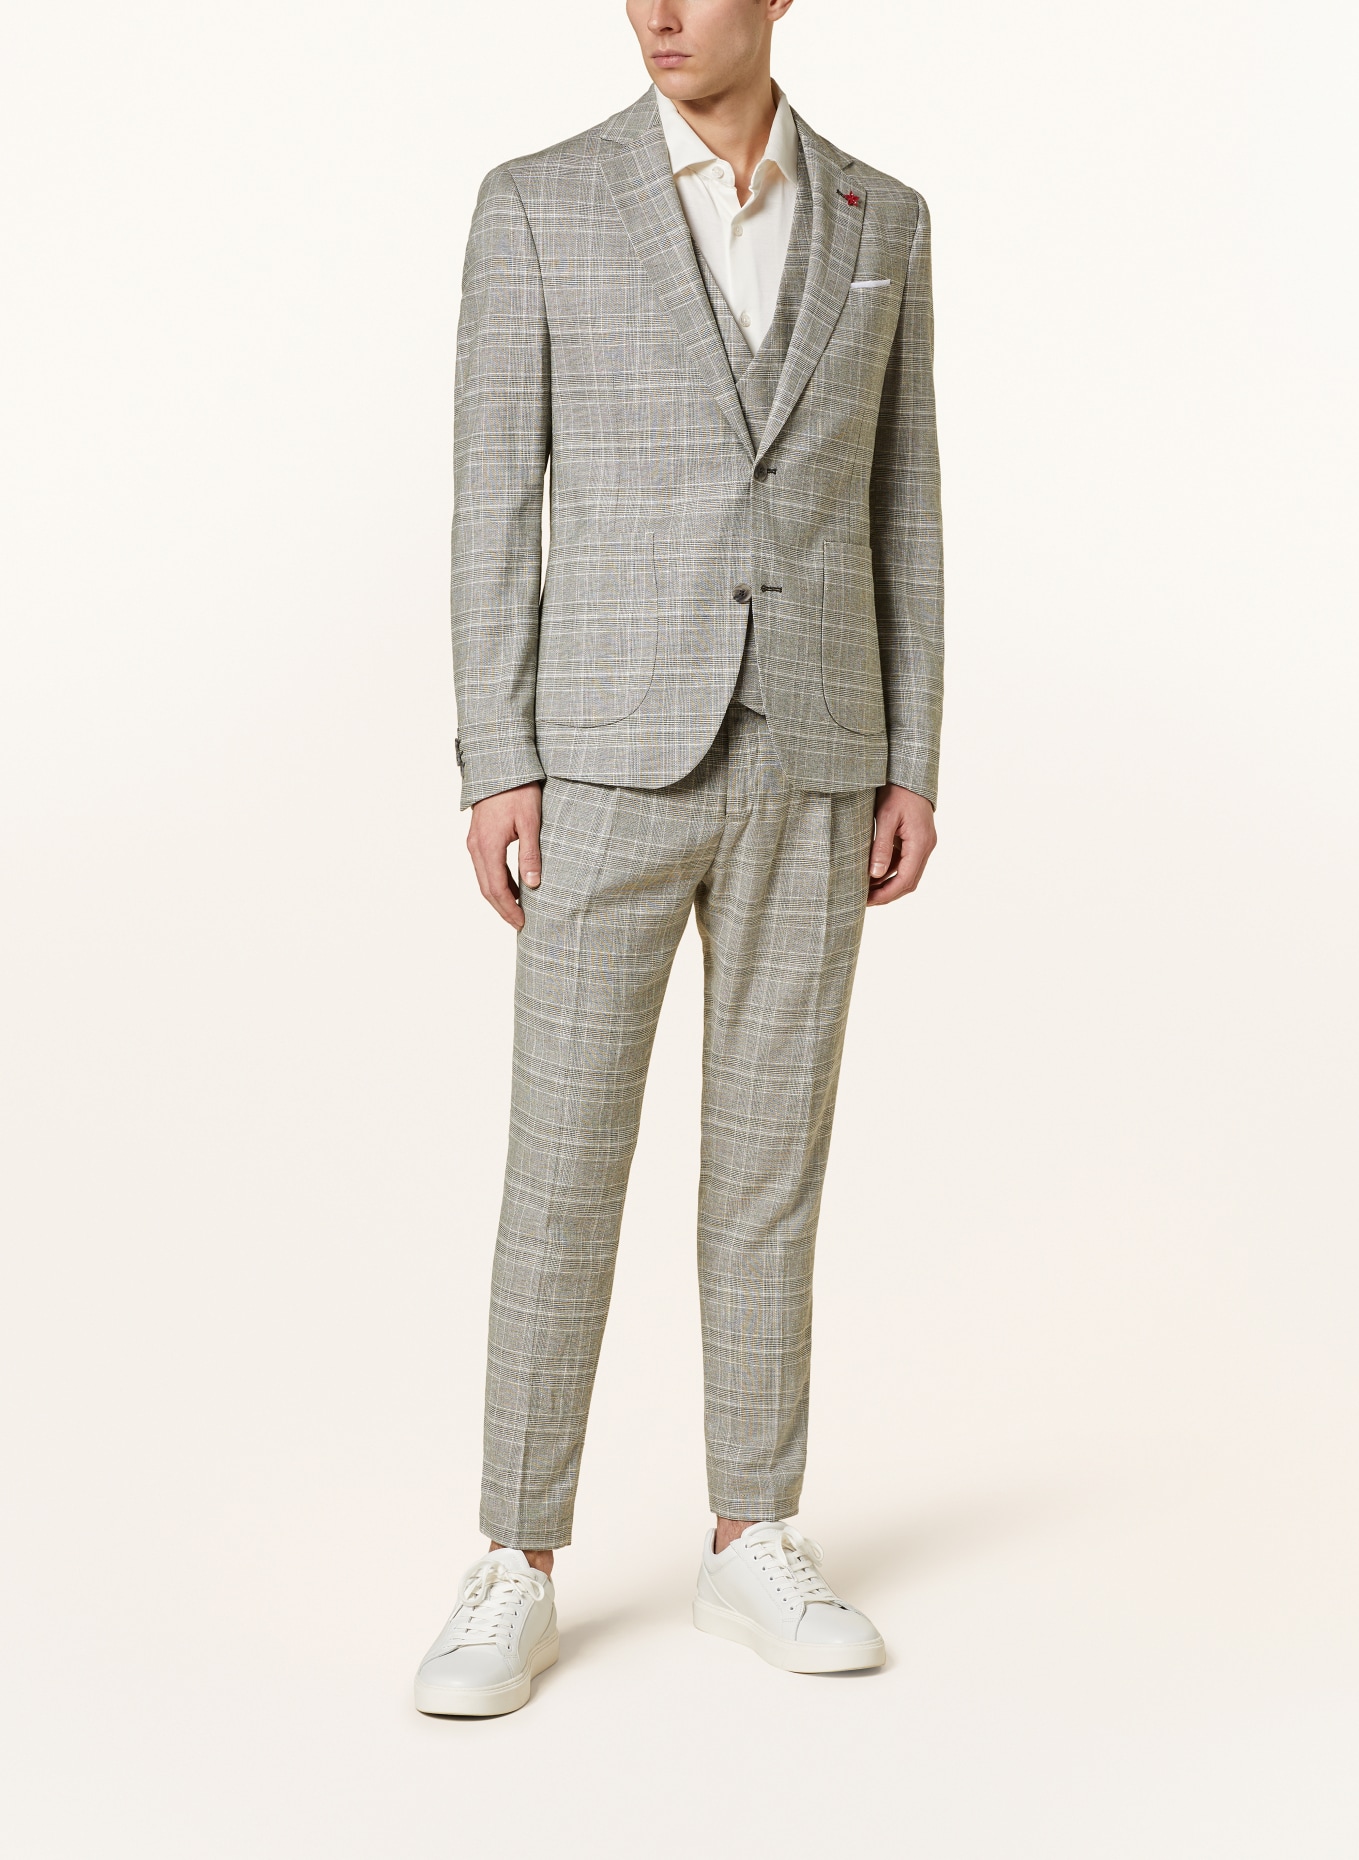 CINQUE Suit jacket CIDATI regular fit, Color: 82 hellgrUEn (Image 2)